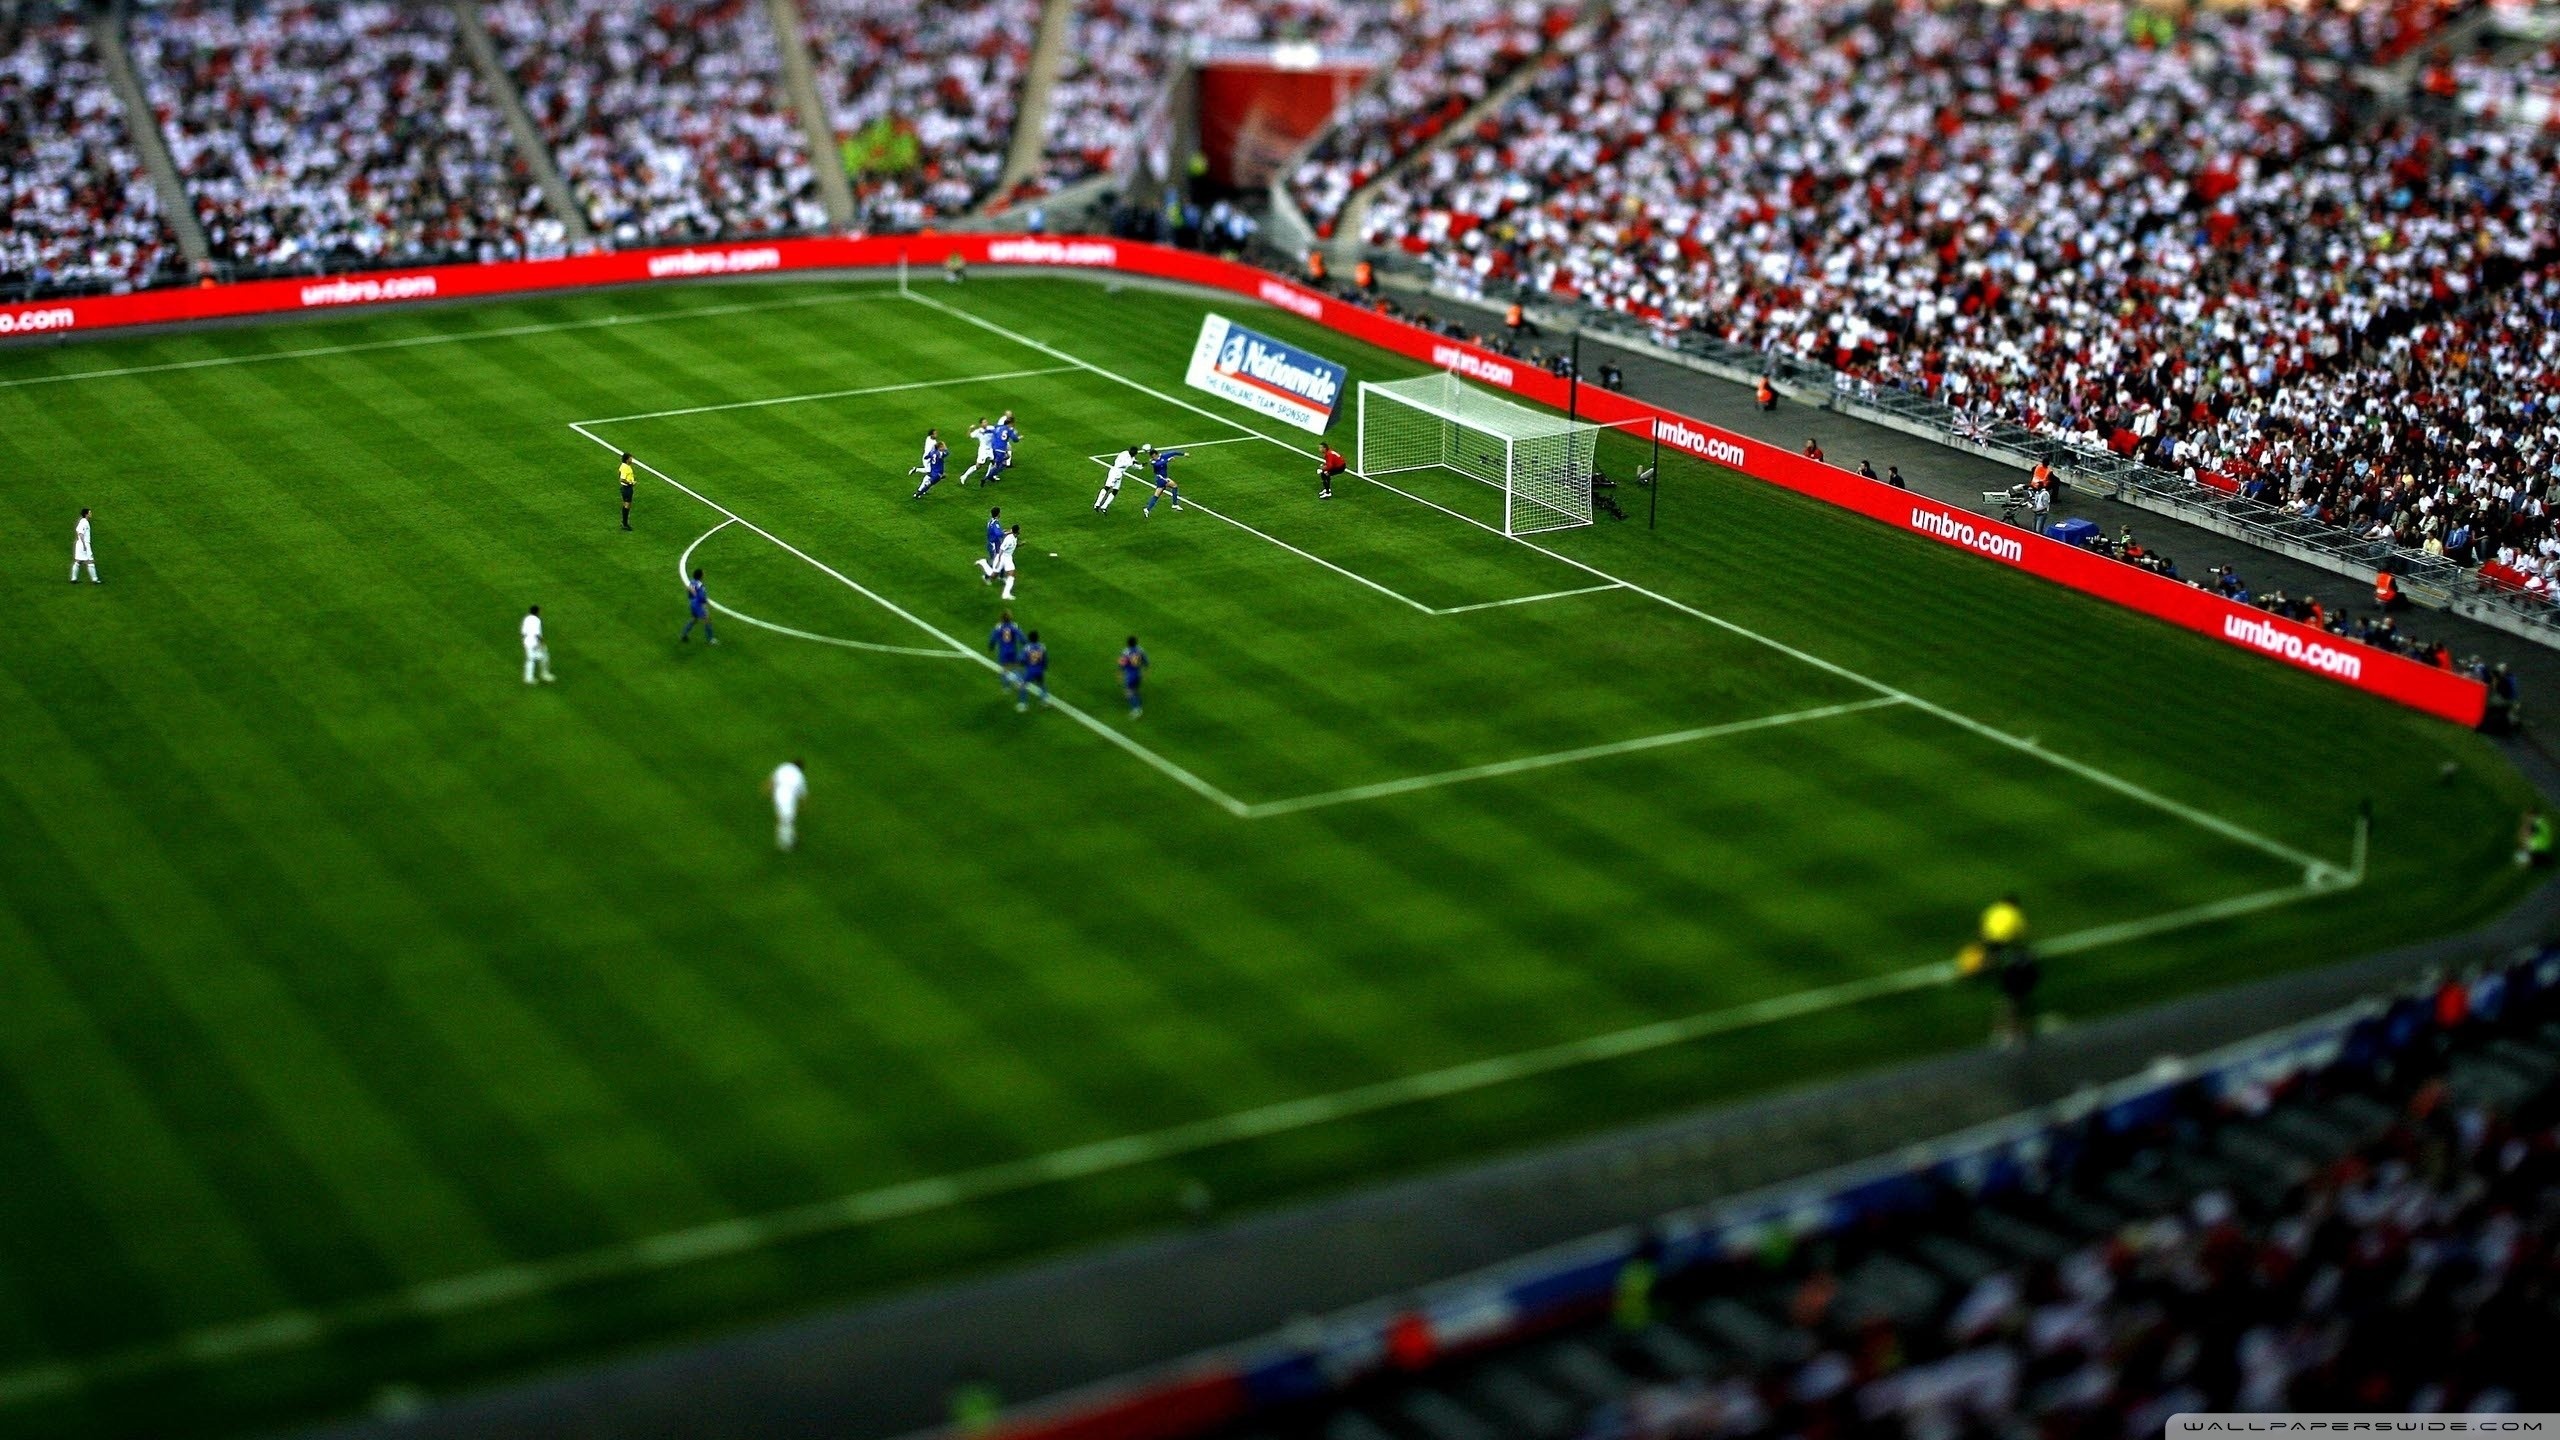 2560x1440 ... Football wallpapers HD Football Game HD desktop wallpaper High  Definition Fullscreen .